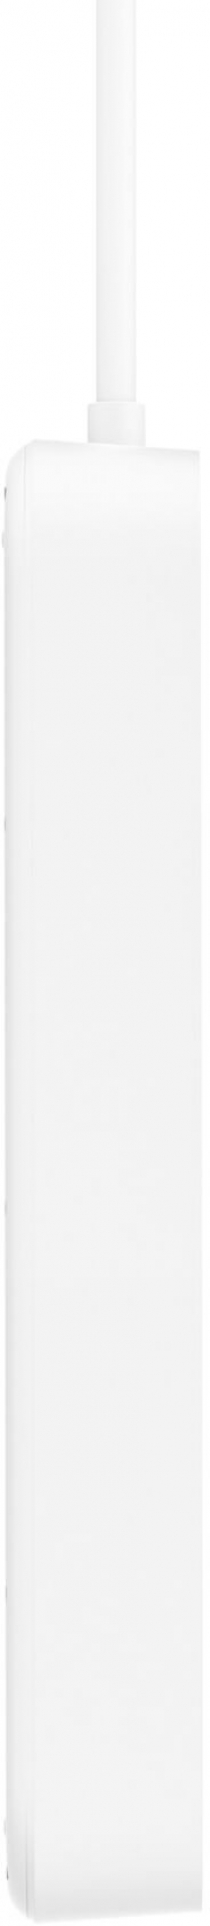 Подовжувач-фільтр мережевий Belkin 8хТип F, 3x1.5мм кв, 16А, USB-A/USB-C 18Вт, з захистом від перенапруги, 2м, білий SRB003VF2M